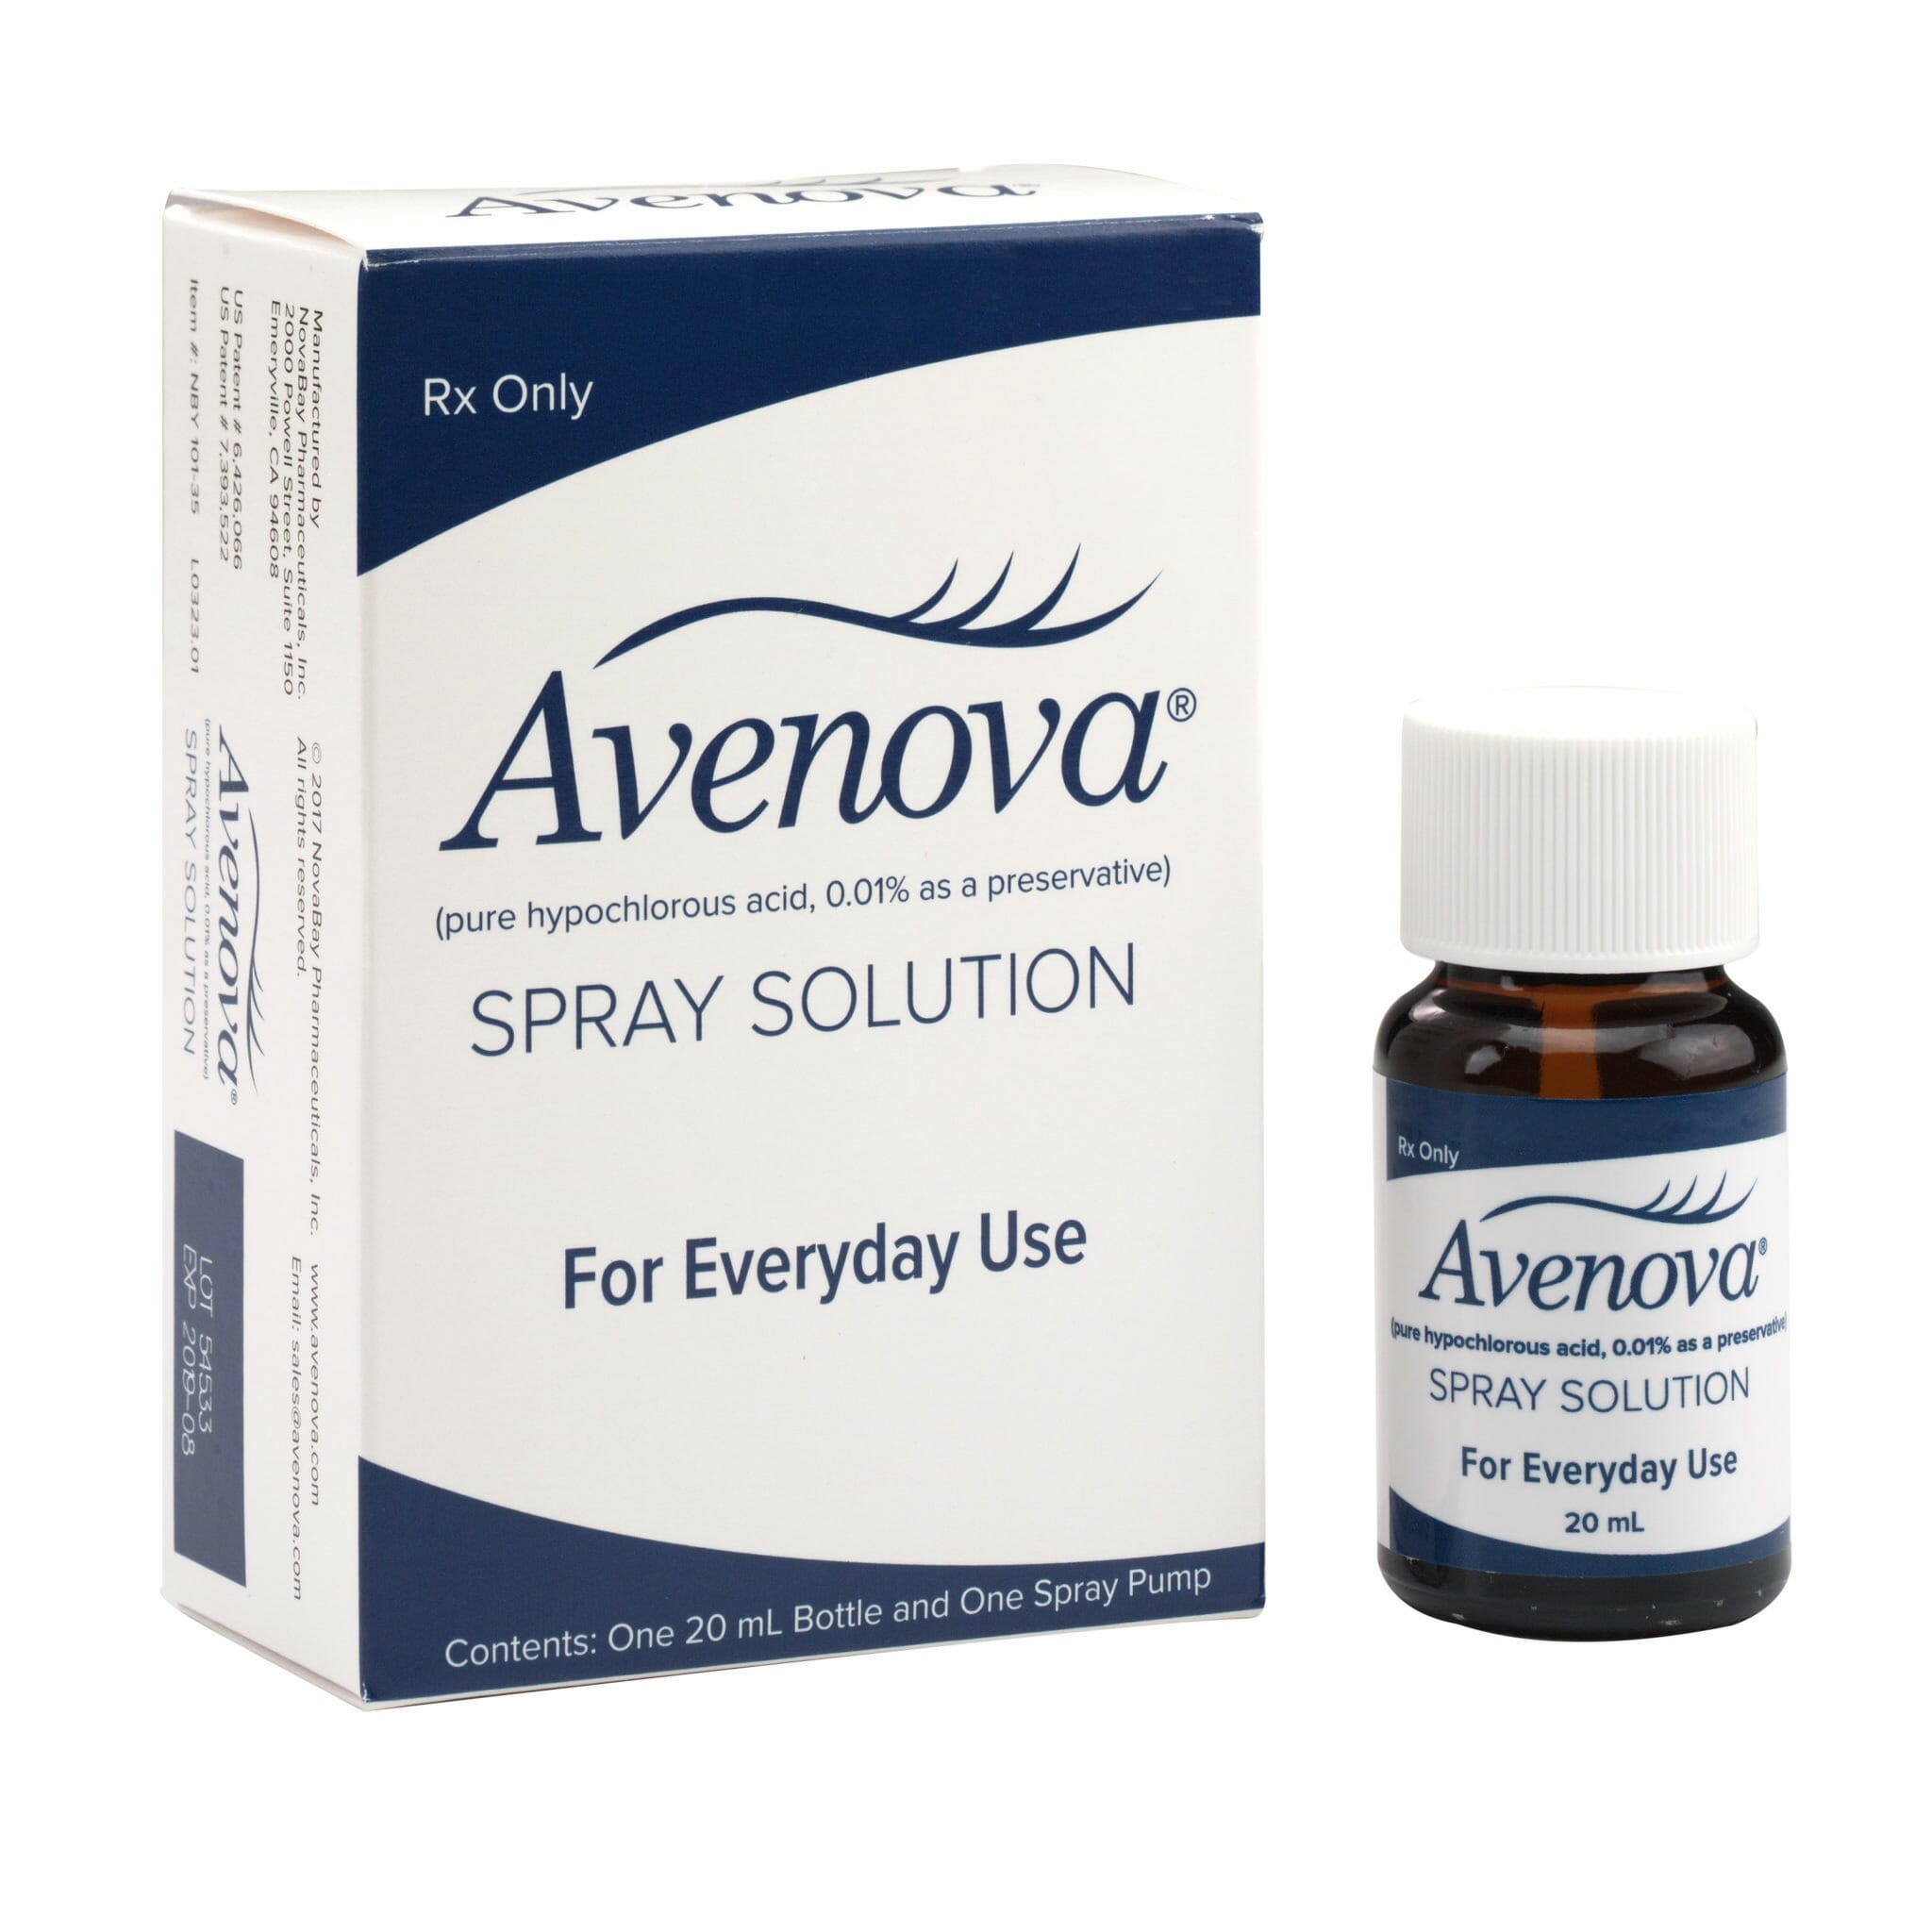 How often should I use Avenova eye cleanser for best results?